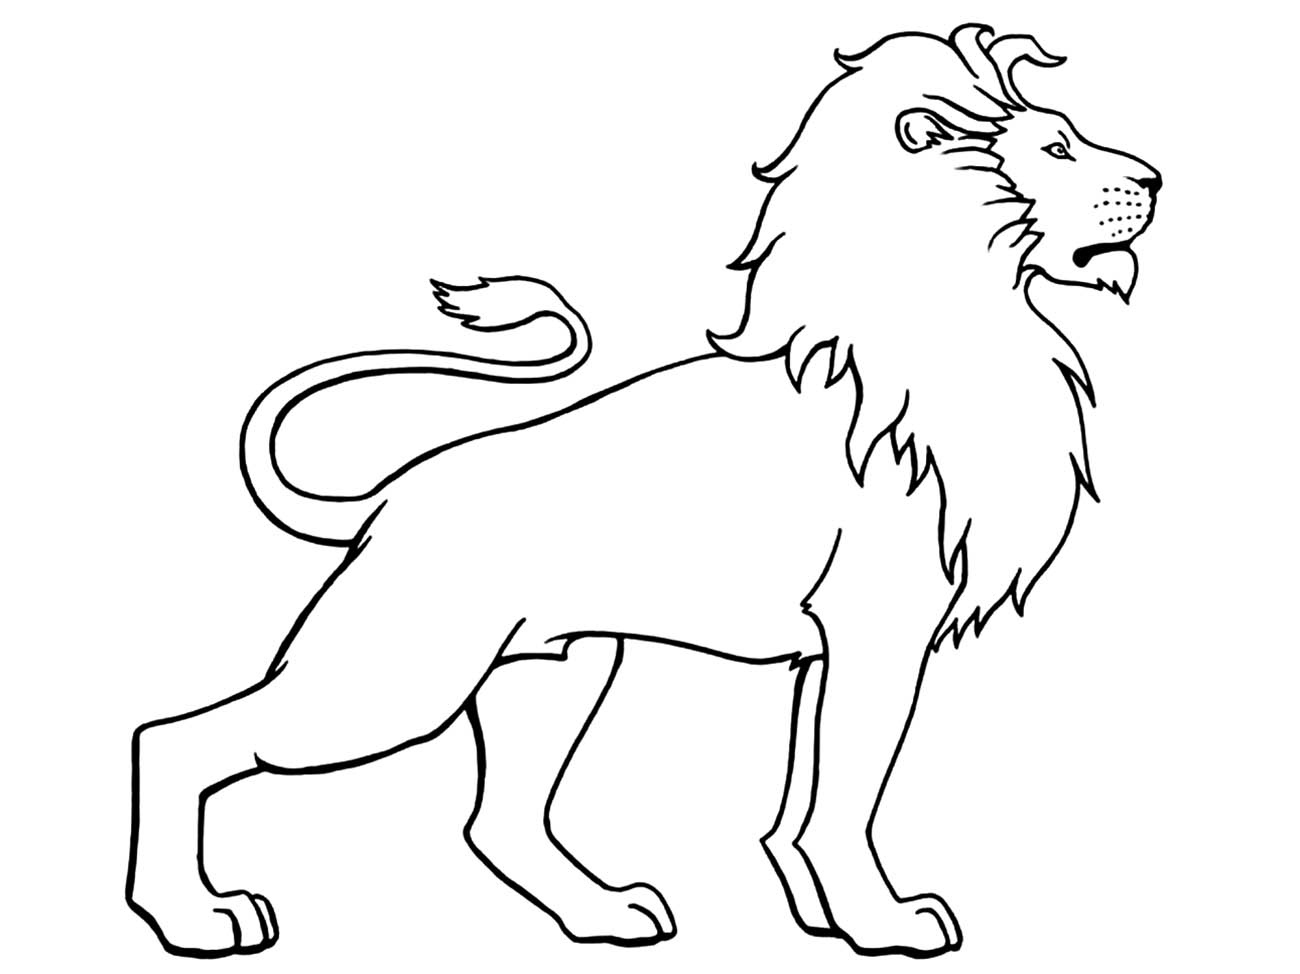 Coloração de um Leão em perfil